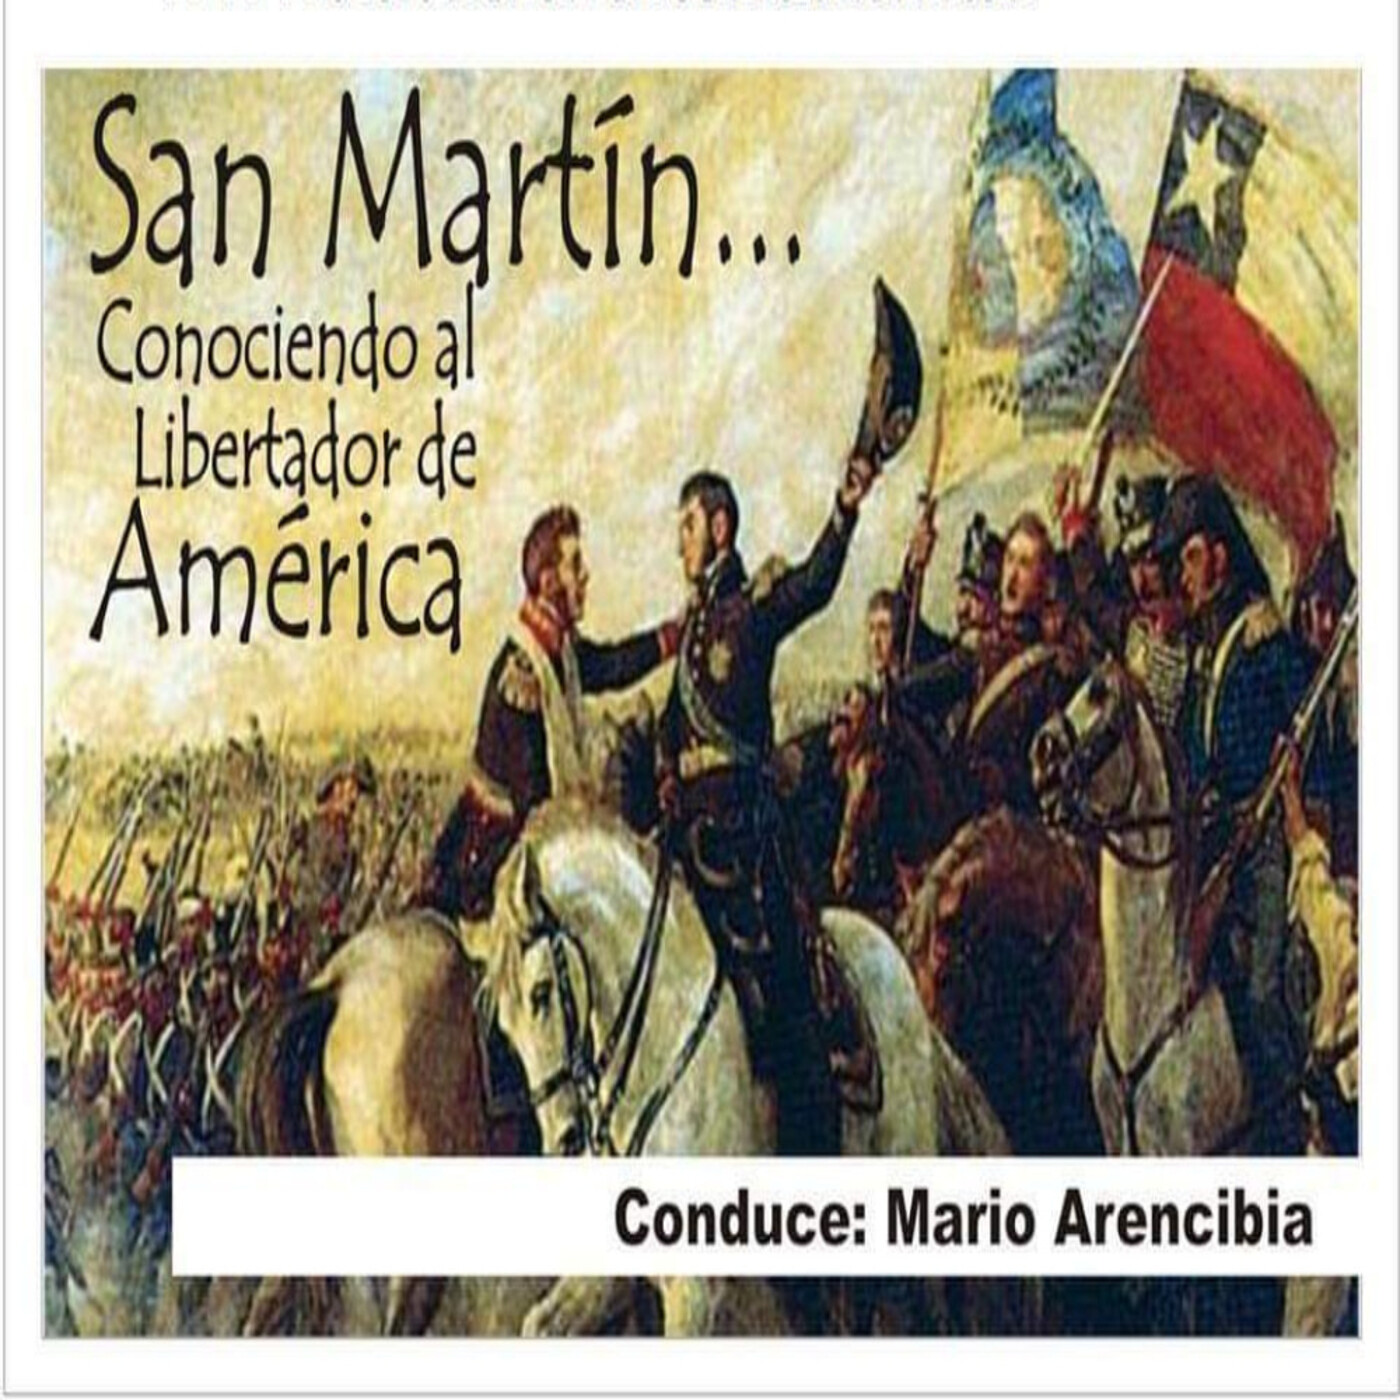 23/12/2023 San Martín (Conociendo al Libertador de America)